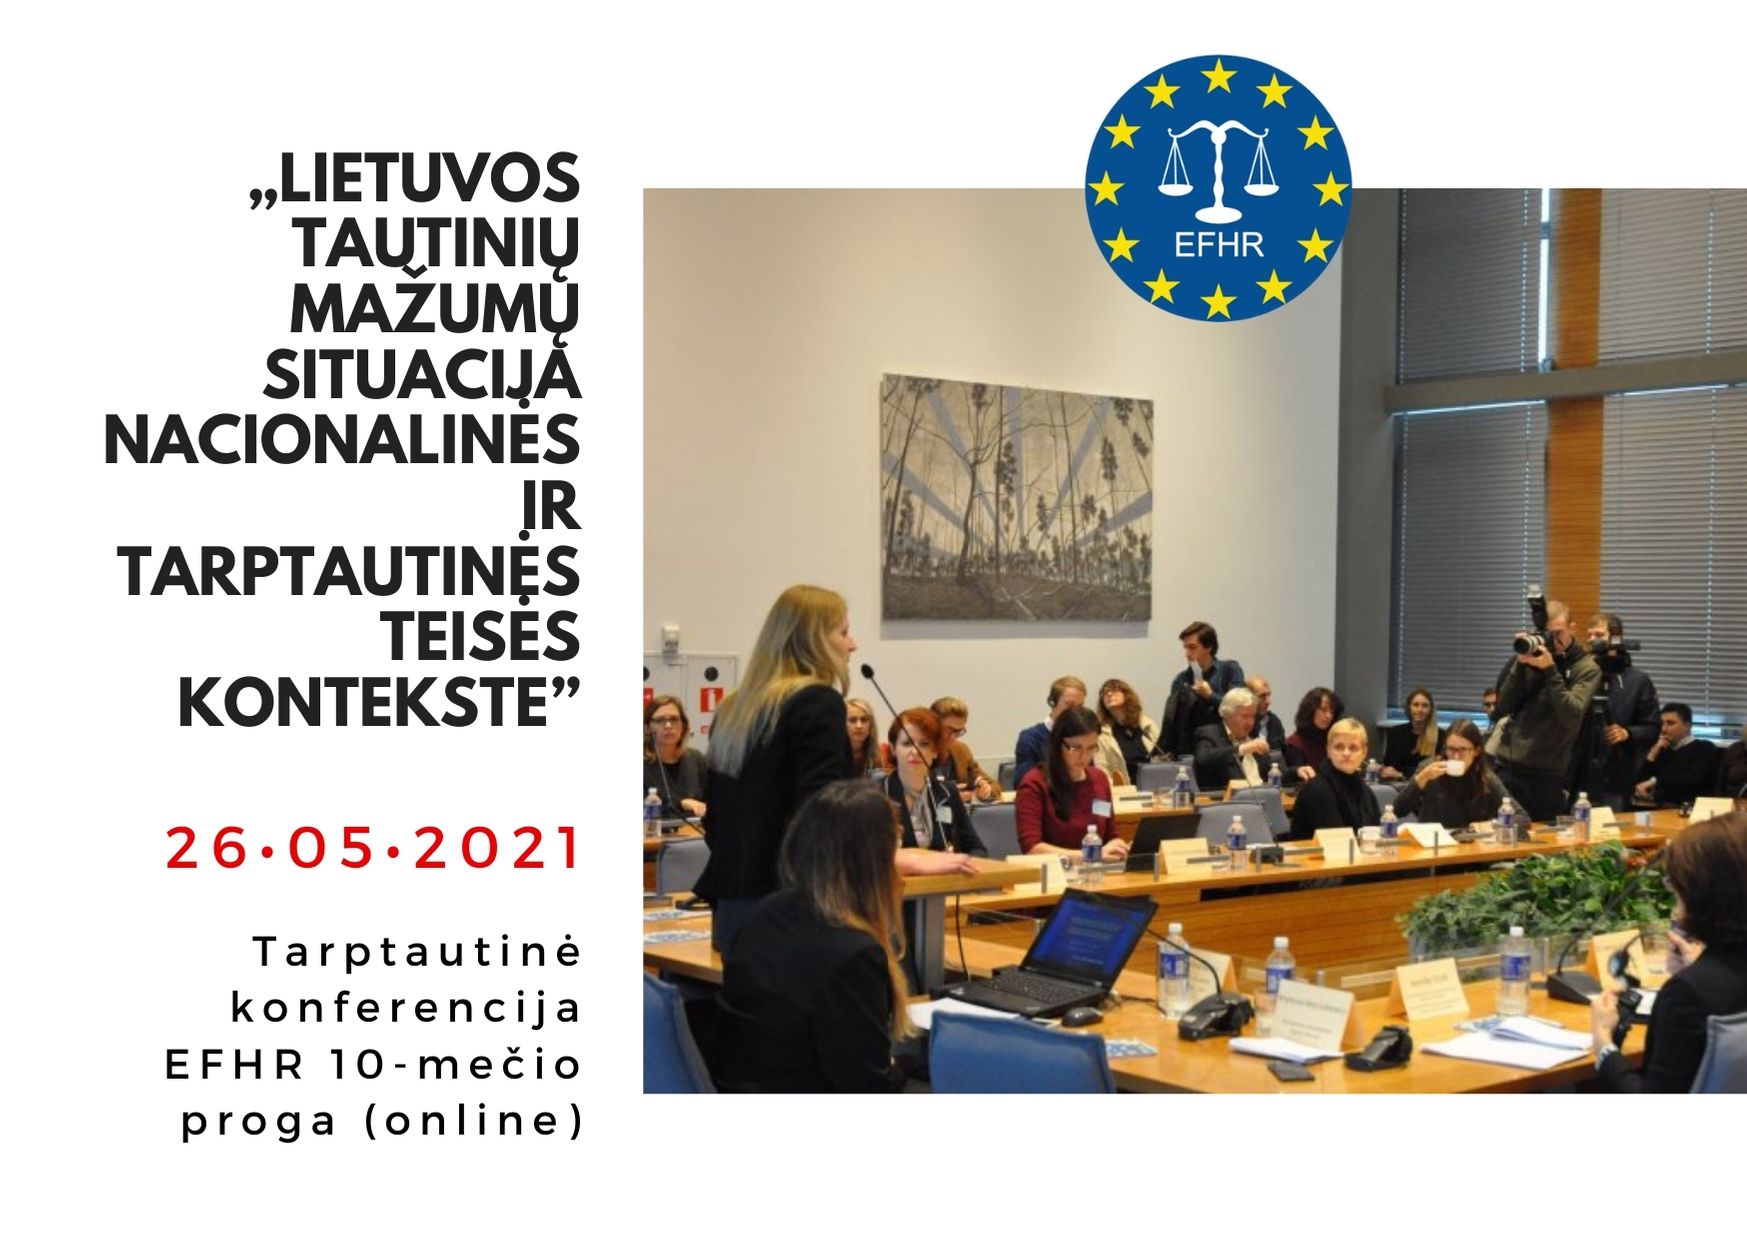 Gegužės 26 d. – Tarptautinė konferencija Lietuvos tautinių mažumų tematika (online)